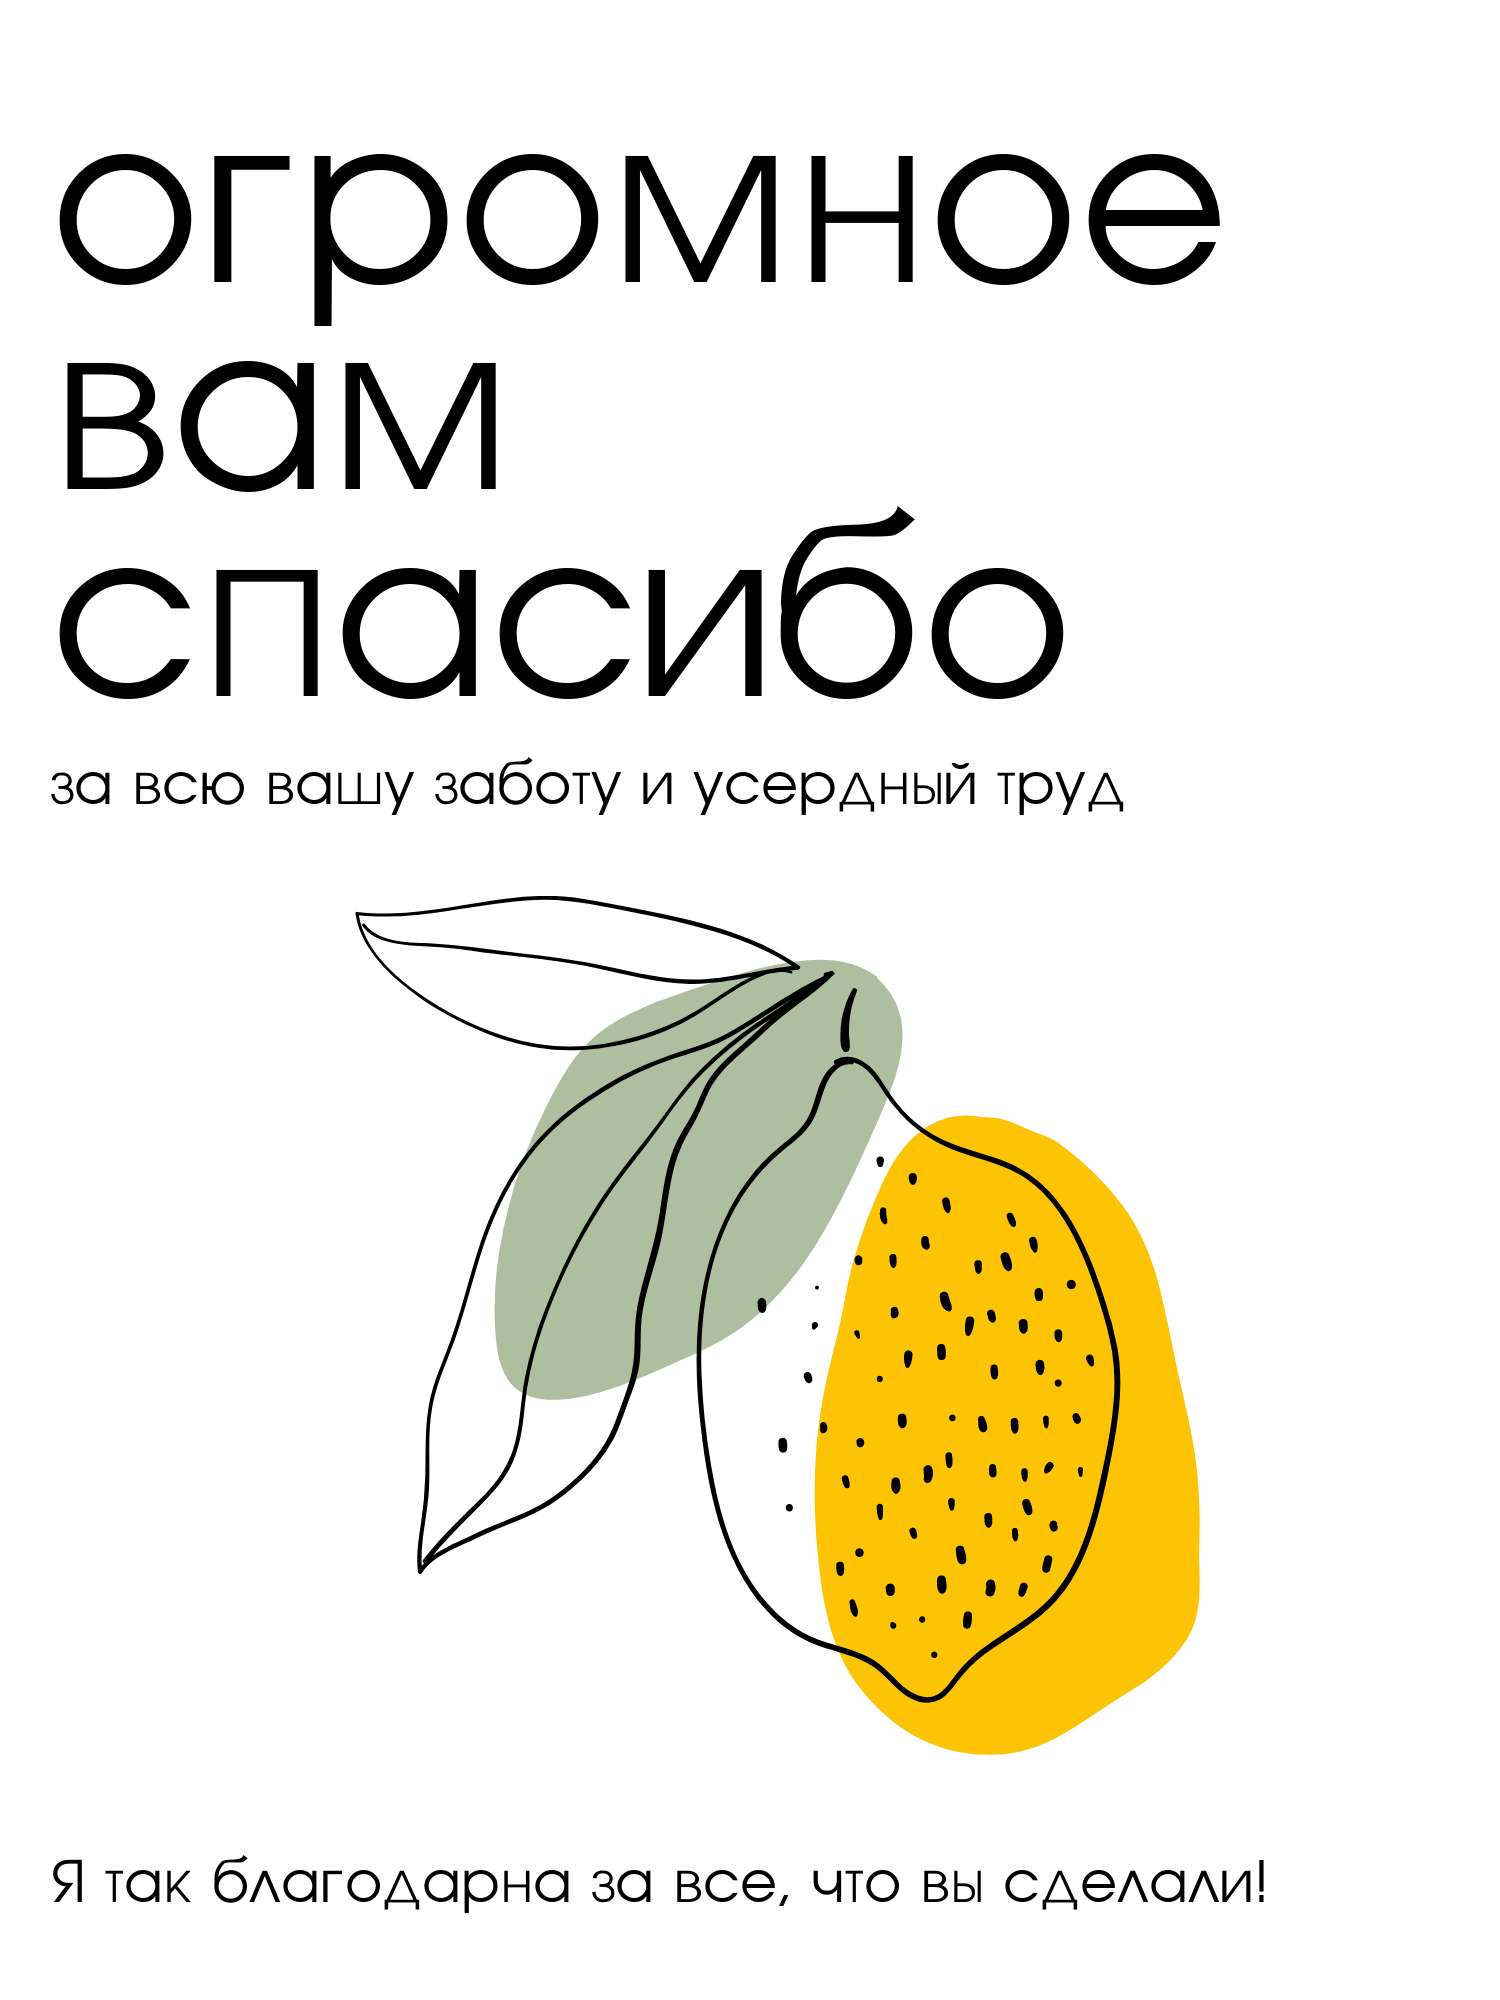 Нарисованная открытка с лимоном с благодарственными словами